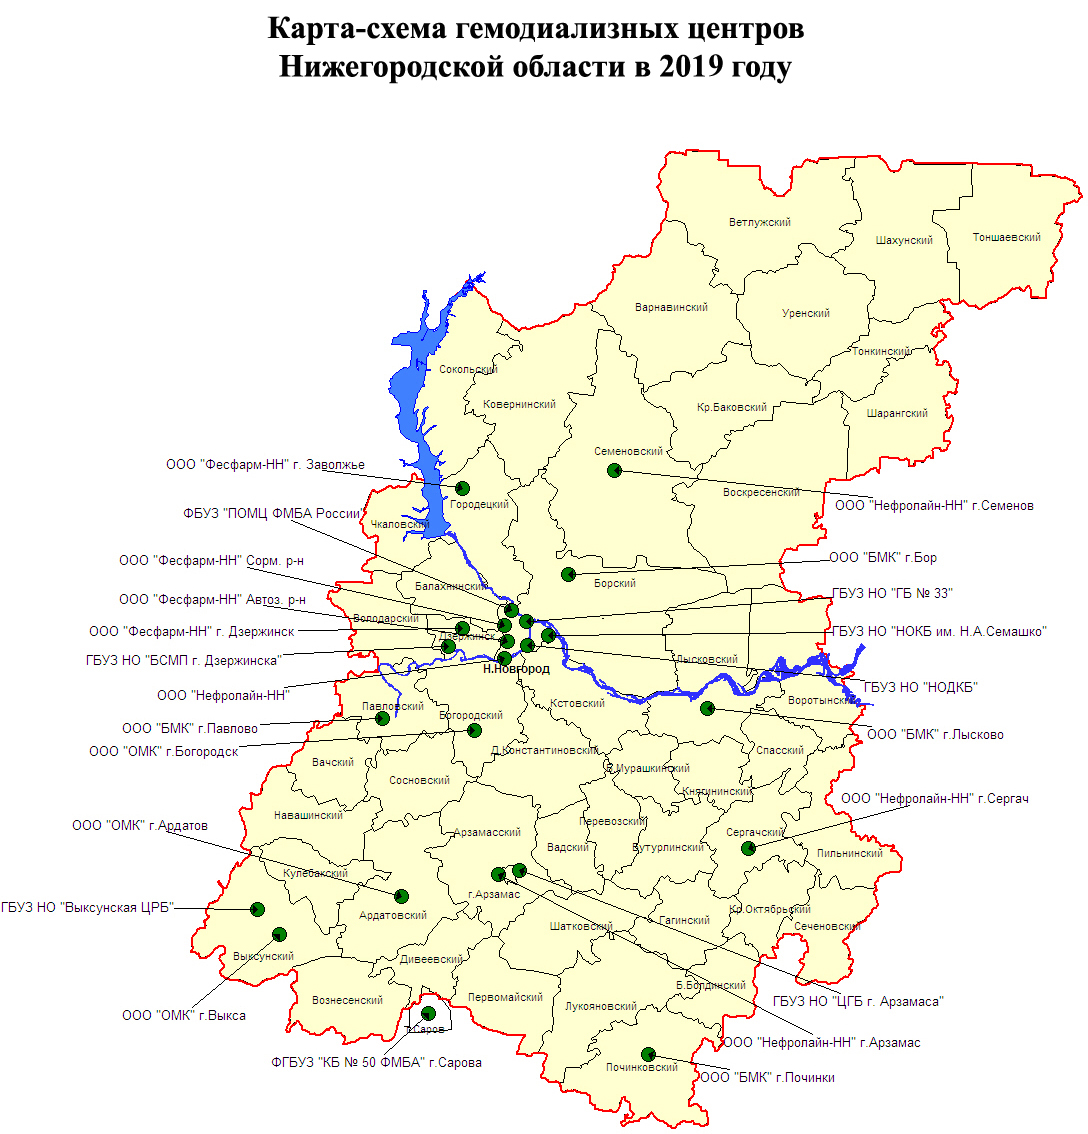 Карта-схема гемодиализных центров Нижегородской области в 2019 году.